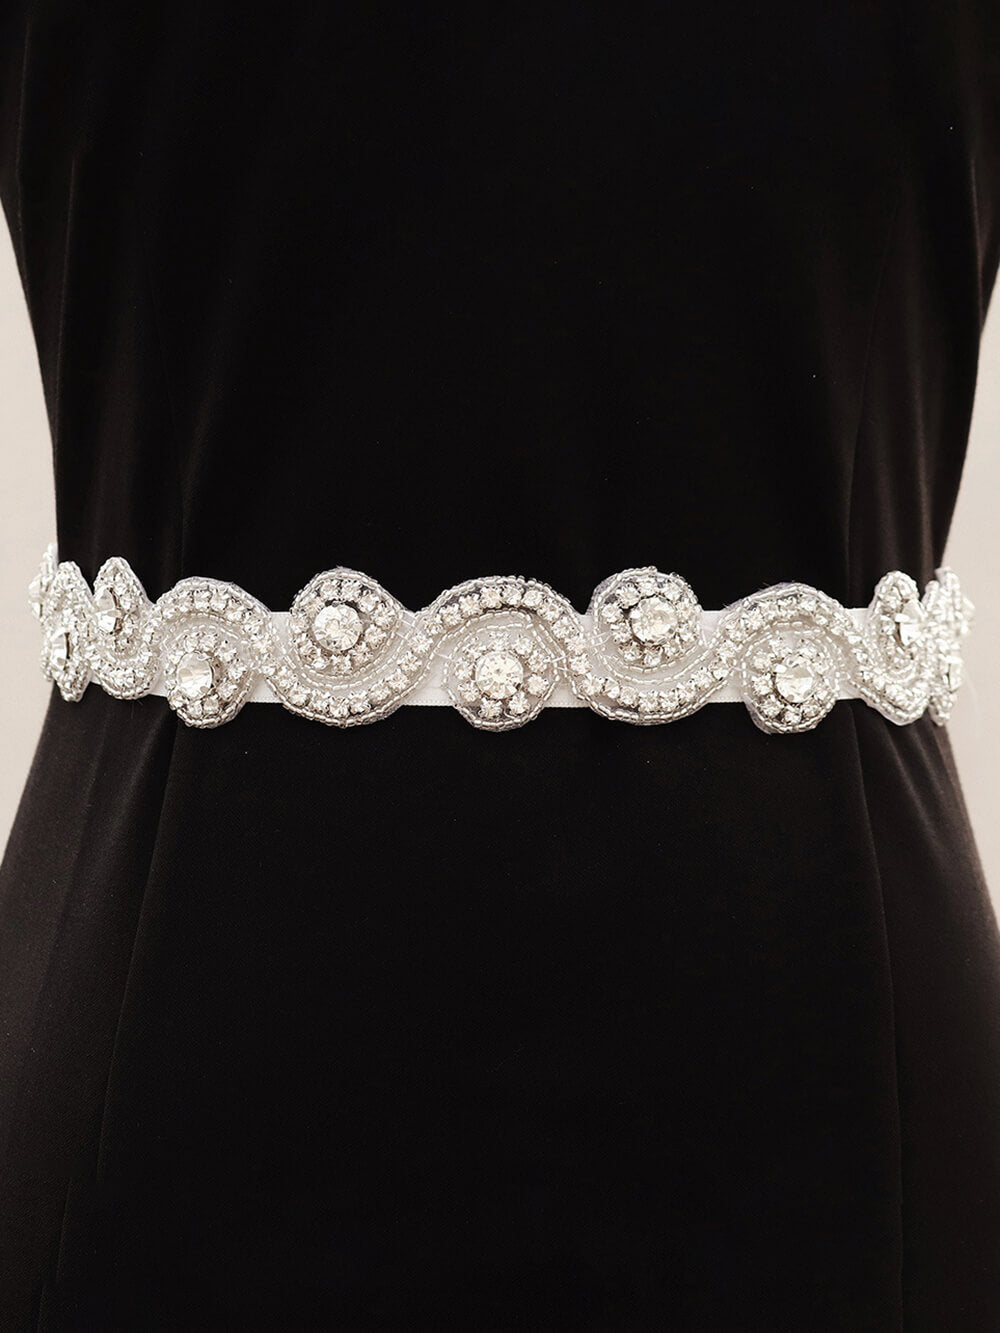 Cinturón de vestido de novia cosido a mano exquisito y hermoso